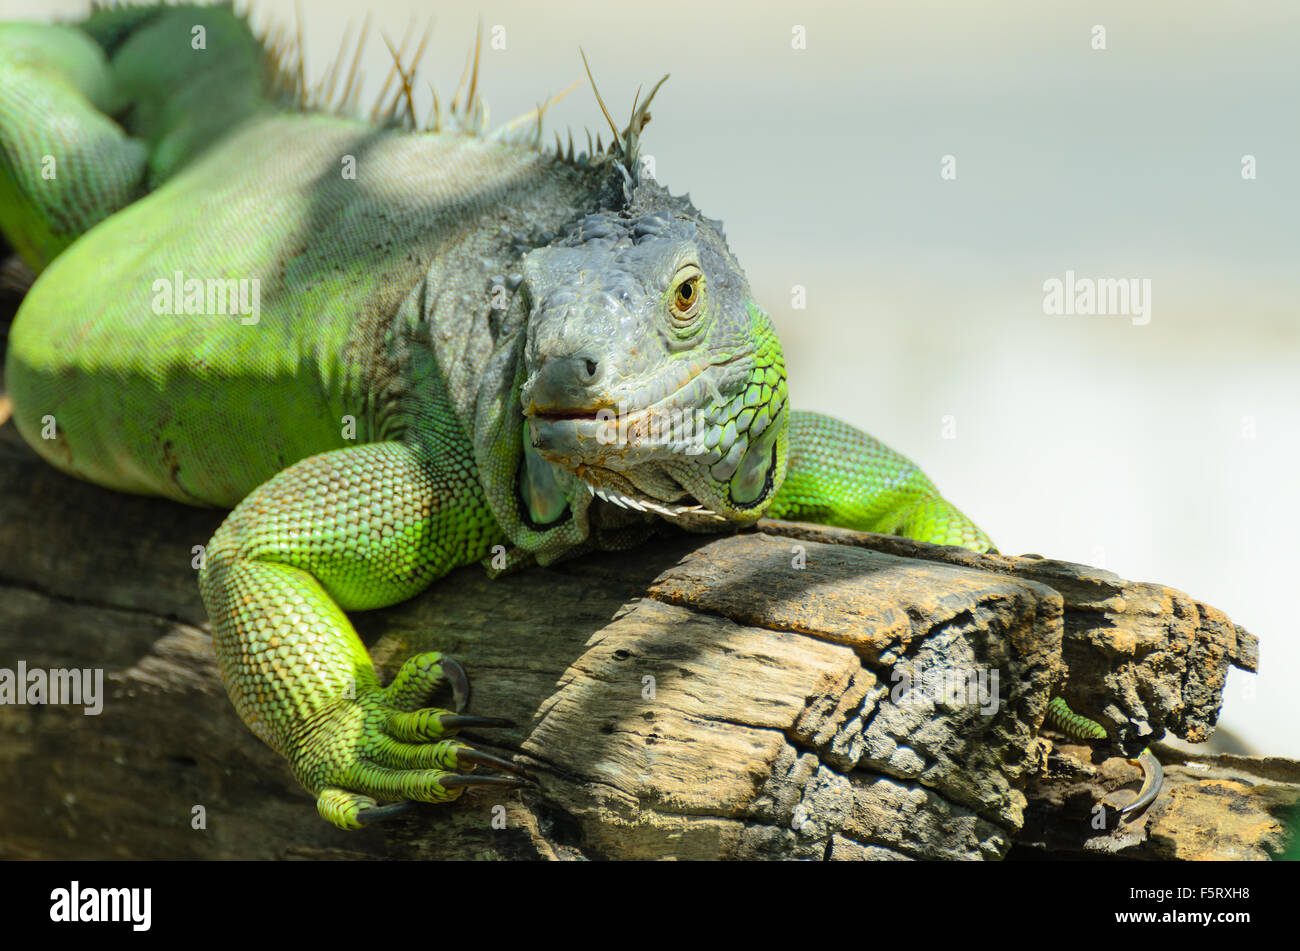 Giant  iguana close up. Stock Photo